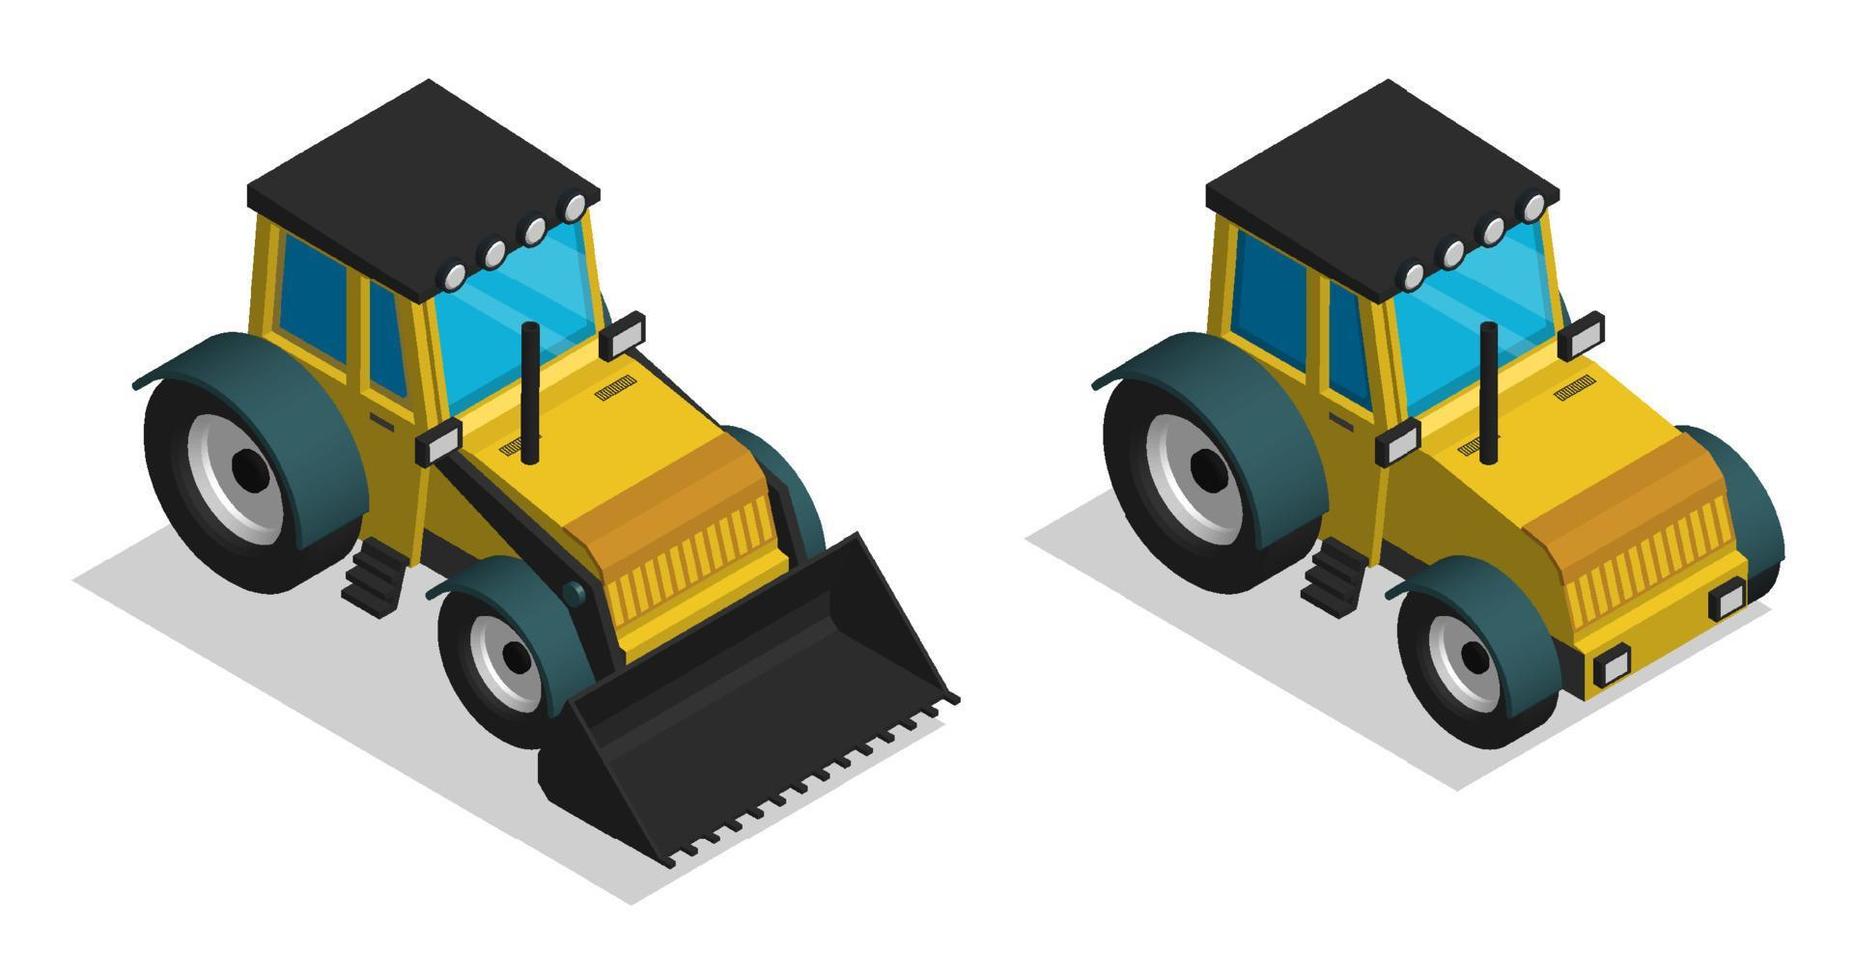 tractor de equipo de construcción isométrica. maquinaria y equipo industrial. vector 3d de dibujos animados realista aislado sobre fondo blanco